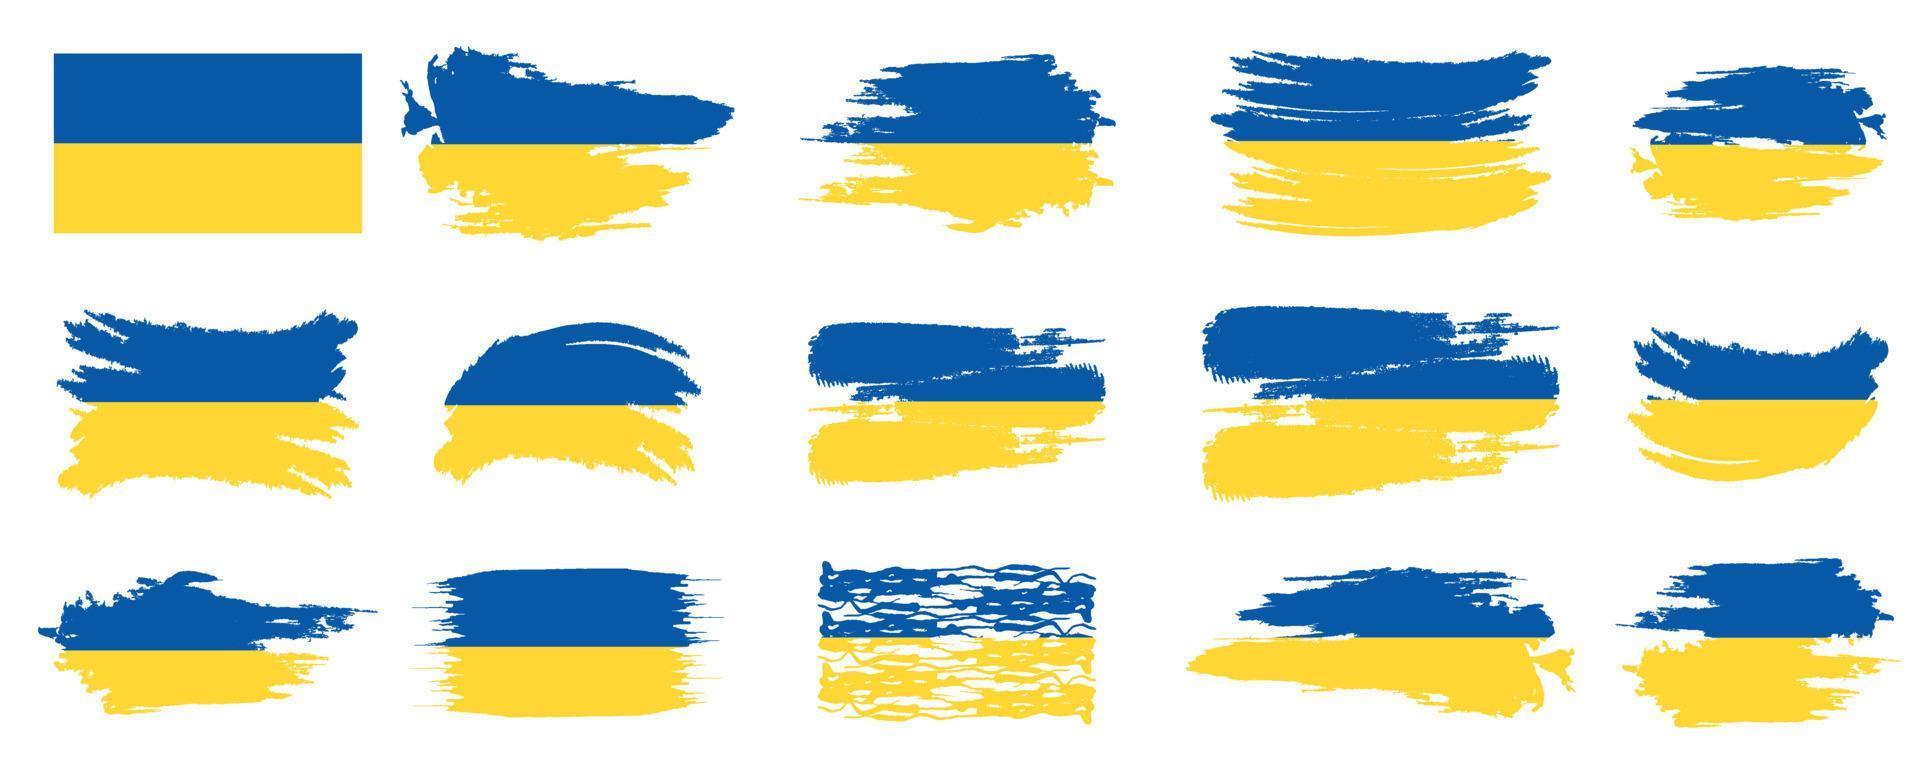 diseño de pincel de bandera de ucrania. efecto de trazo de pincel de bandera nacional de ucrania en el conjunto de diseño de vector de fondo blanco. Ilustración de vector de bandera de Ucrania